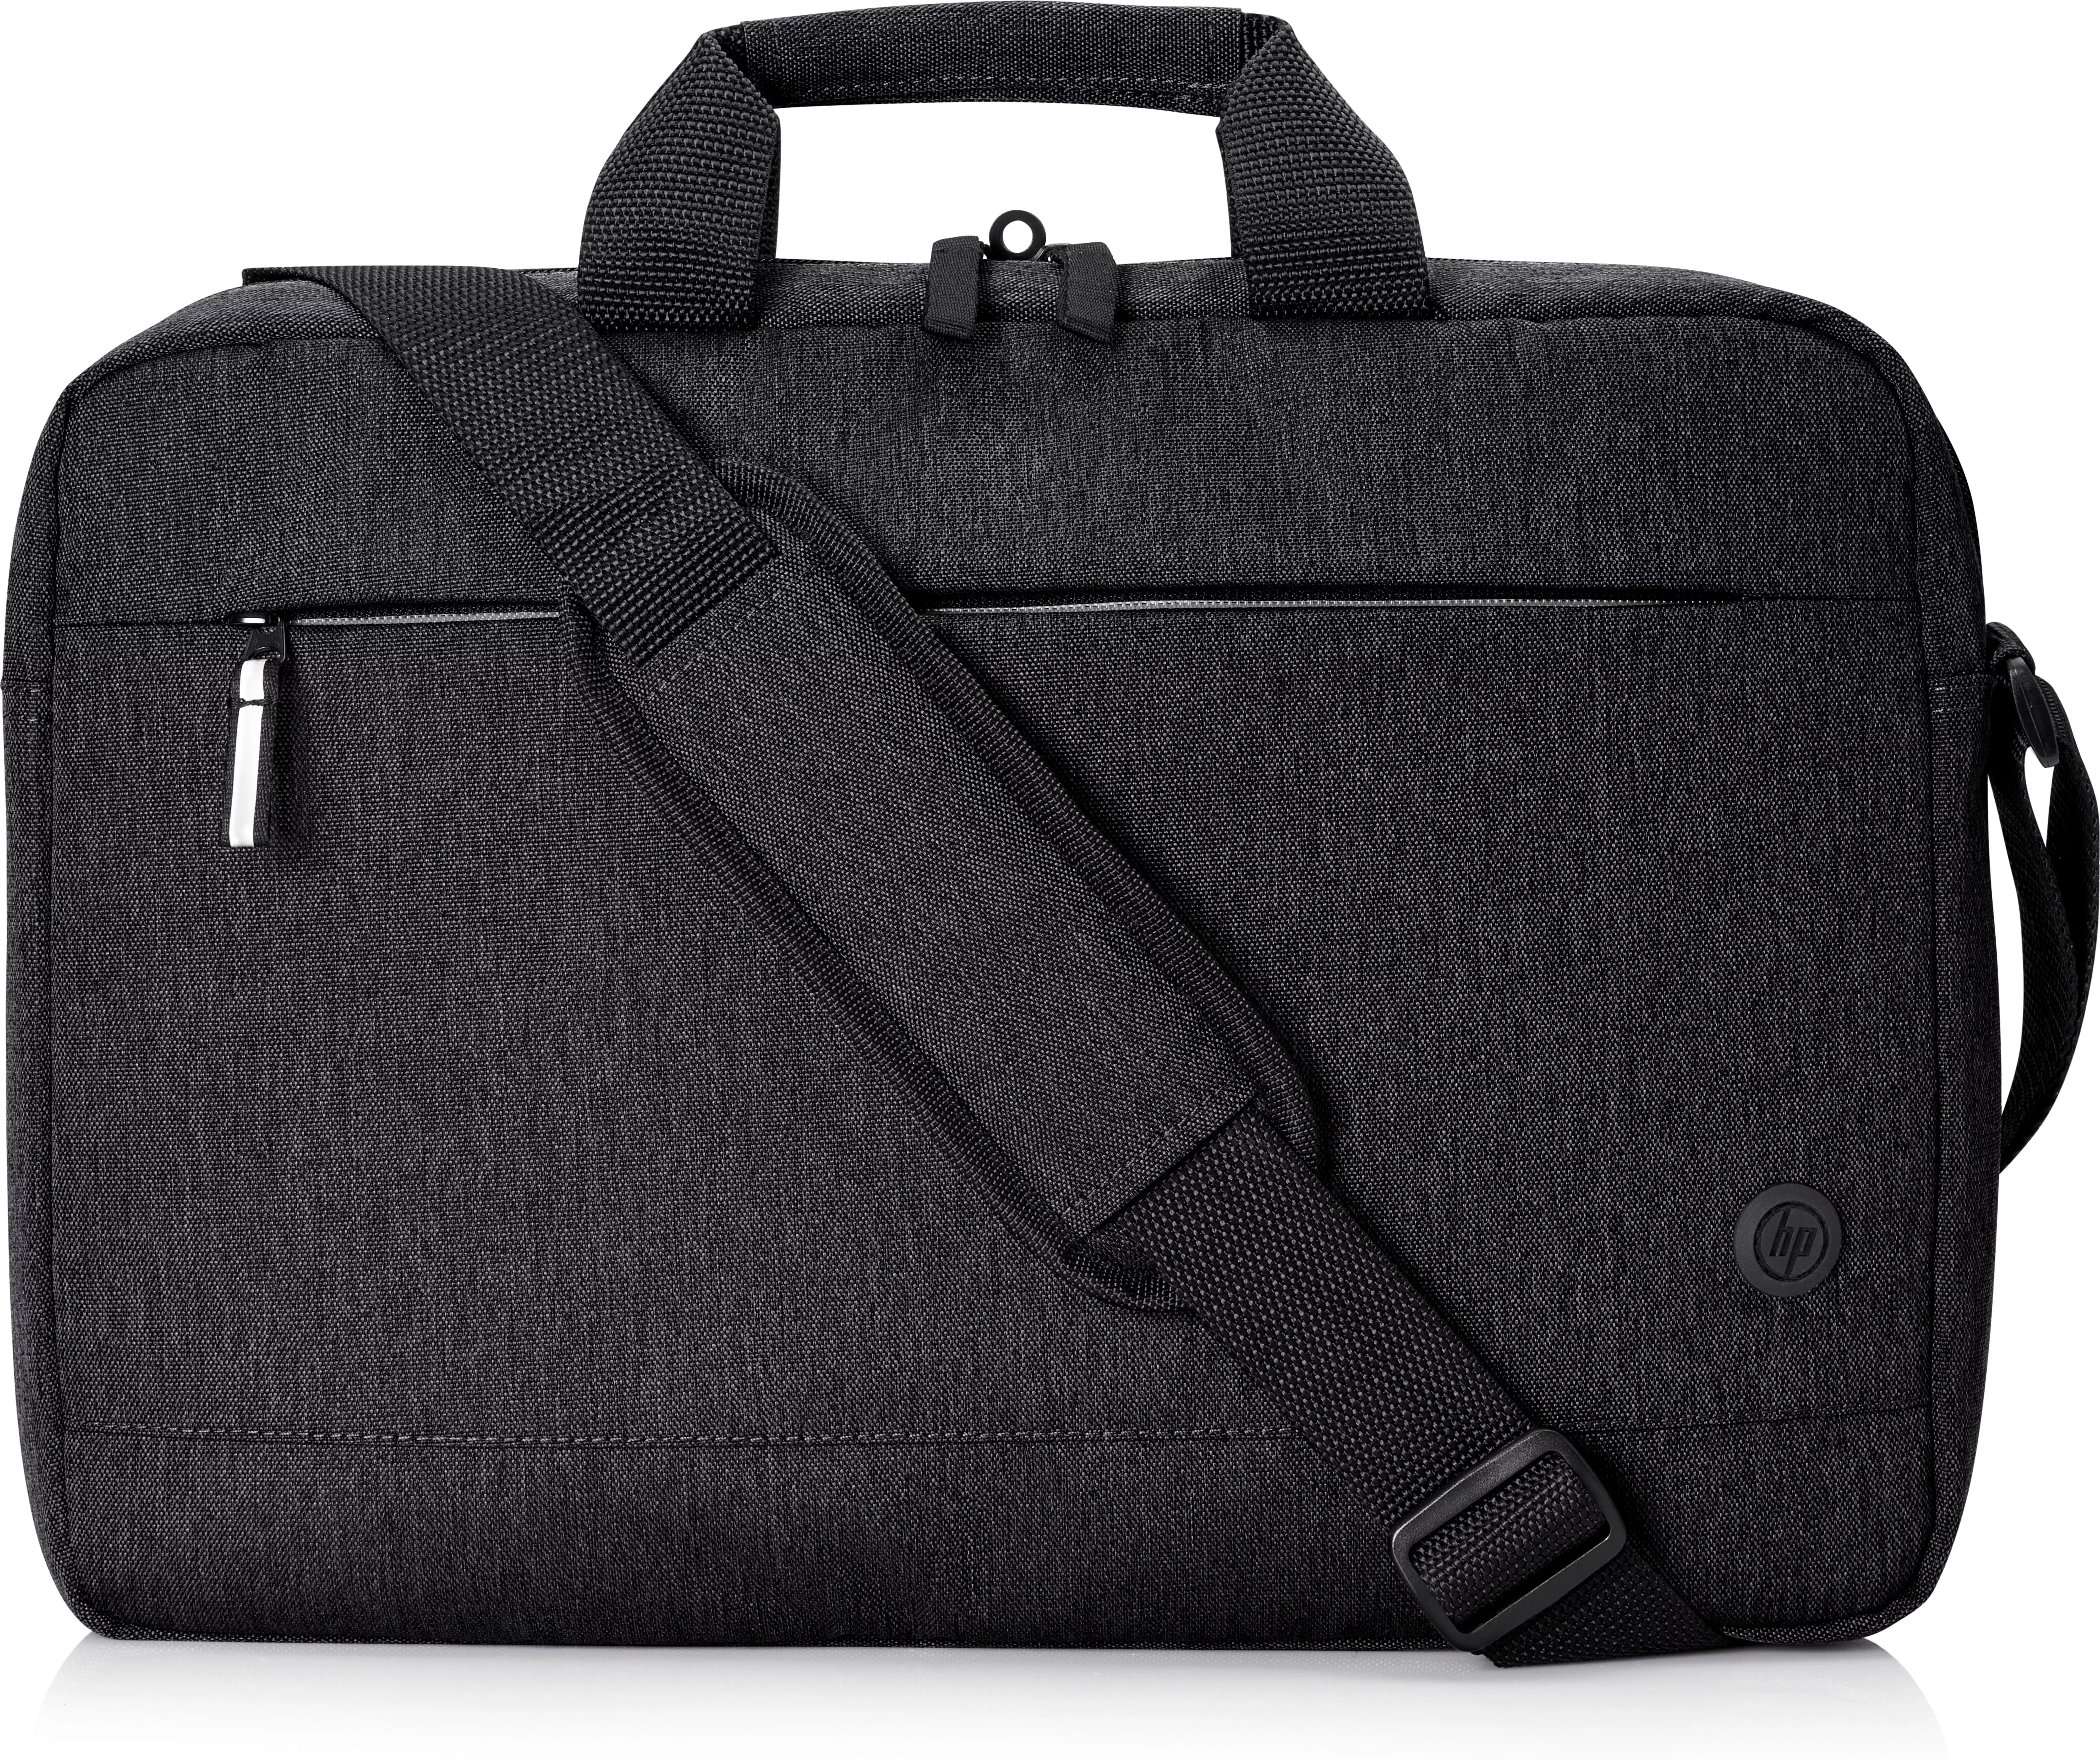 Sacoche pour ordinateur portable 15.6 17 pouces, sac de protection